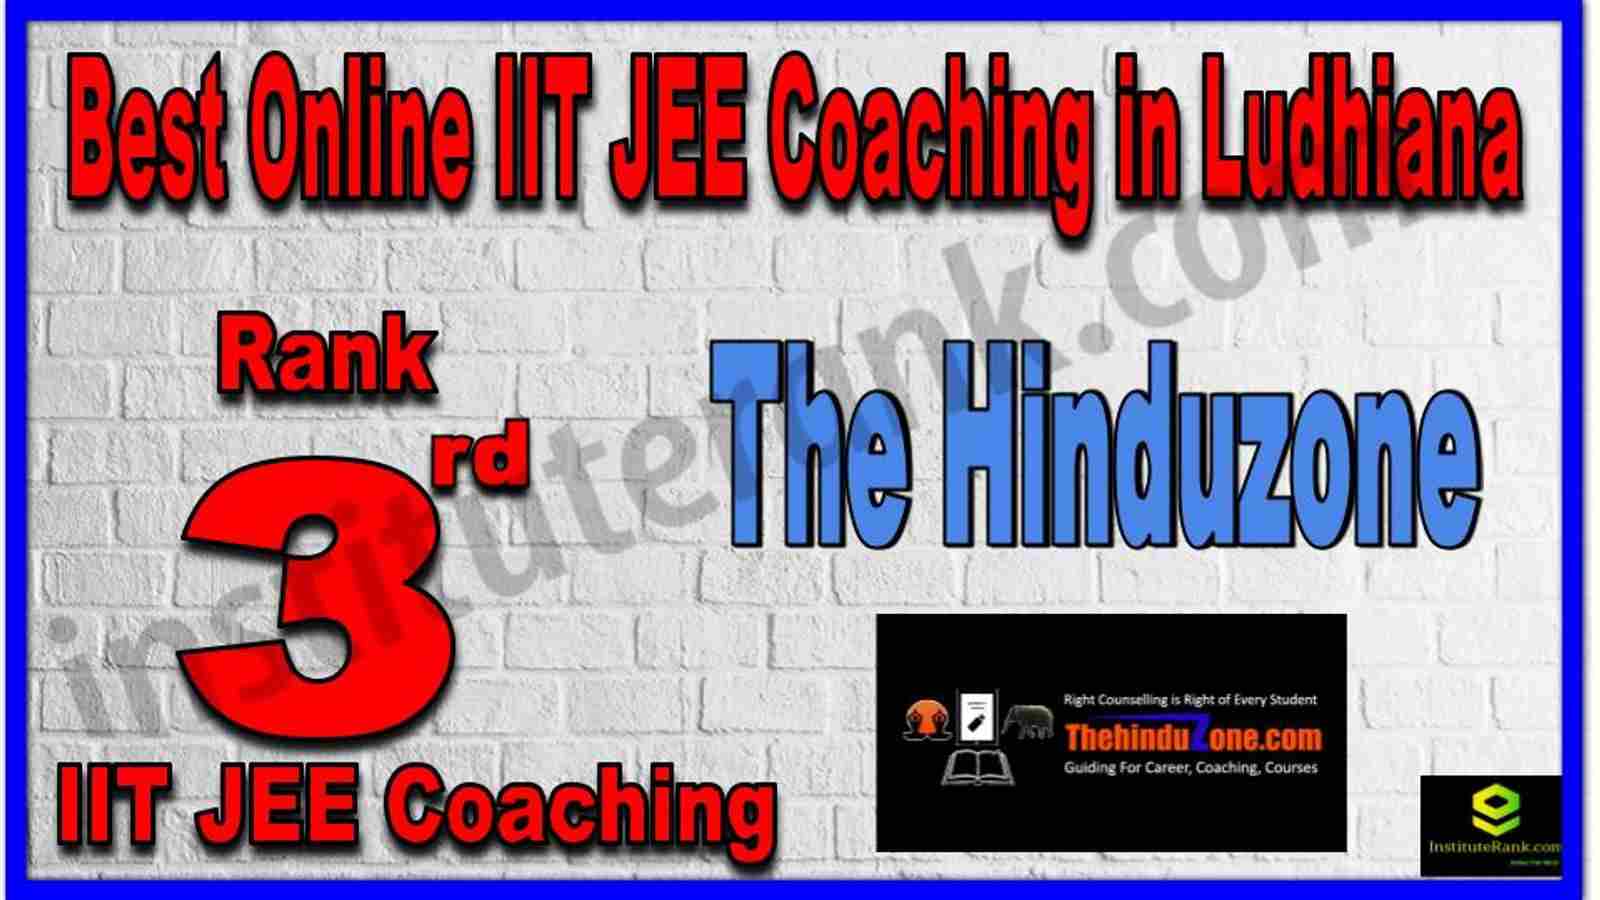 Rank 3rd Best Online IIT JEE Coaching in Ludhiana